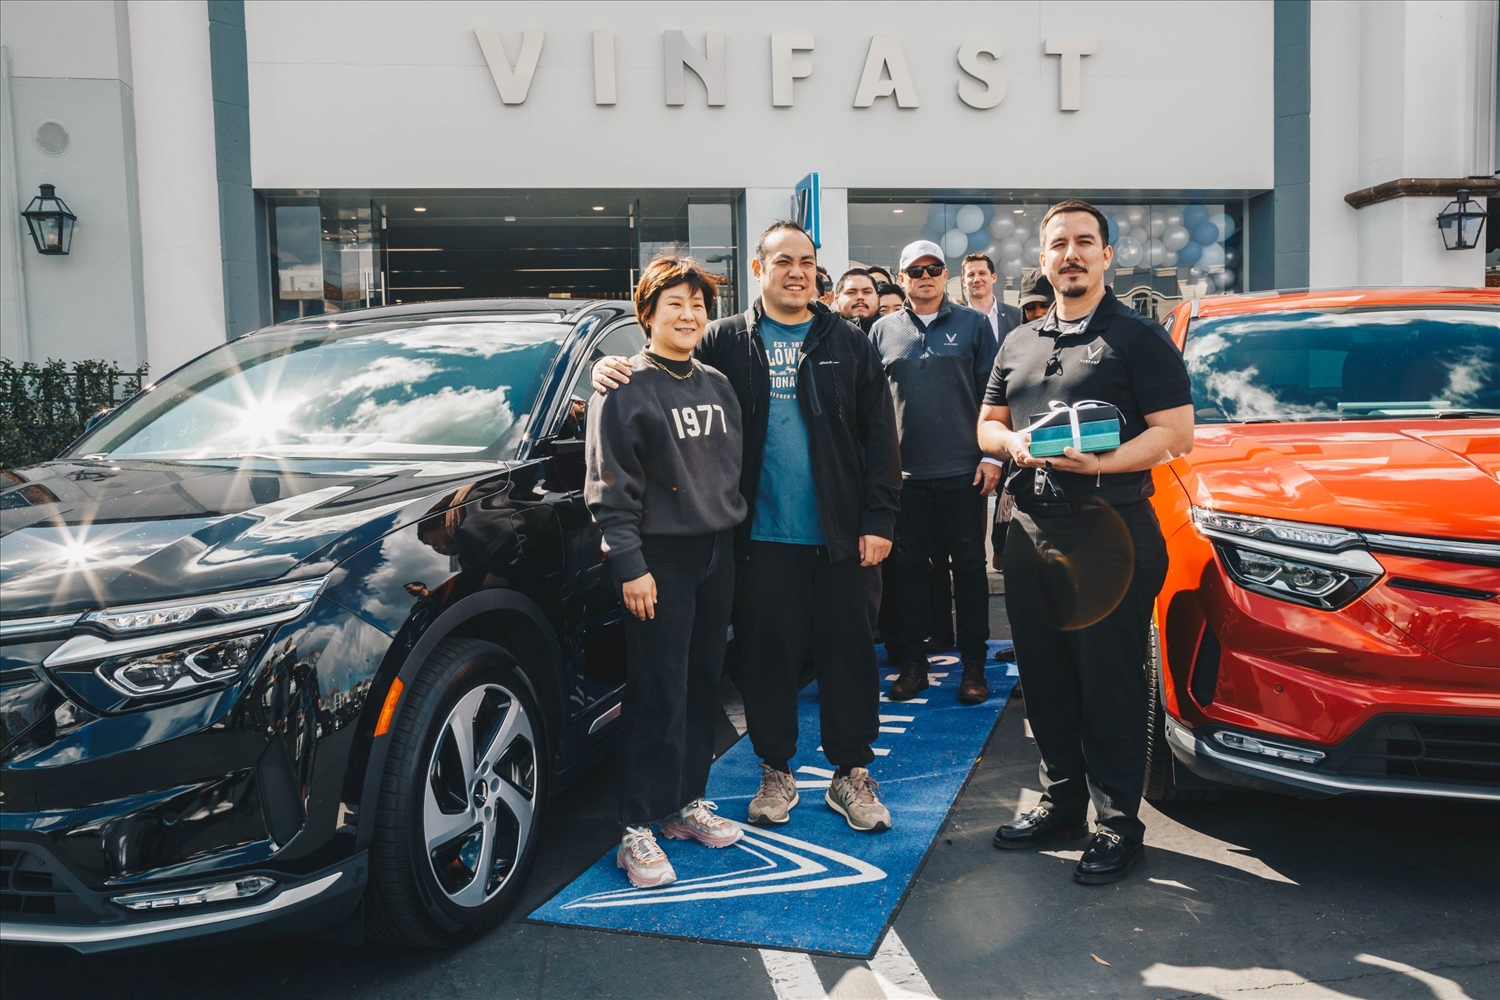 VinFast bàn giao xe cho khách hàng Mỹ